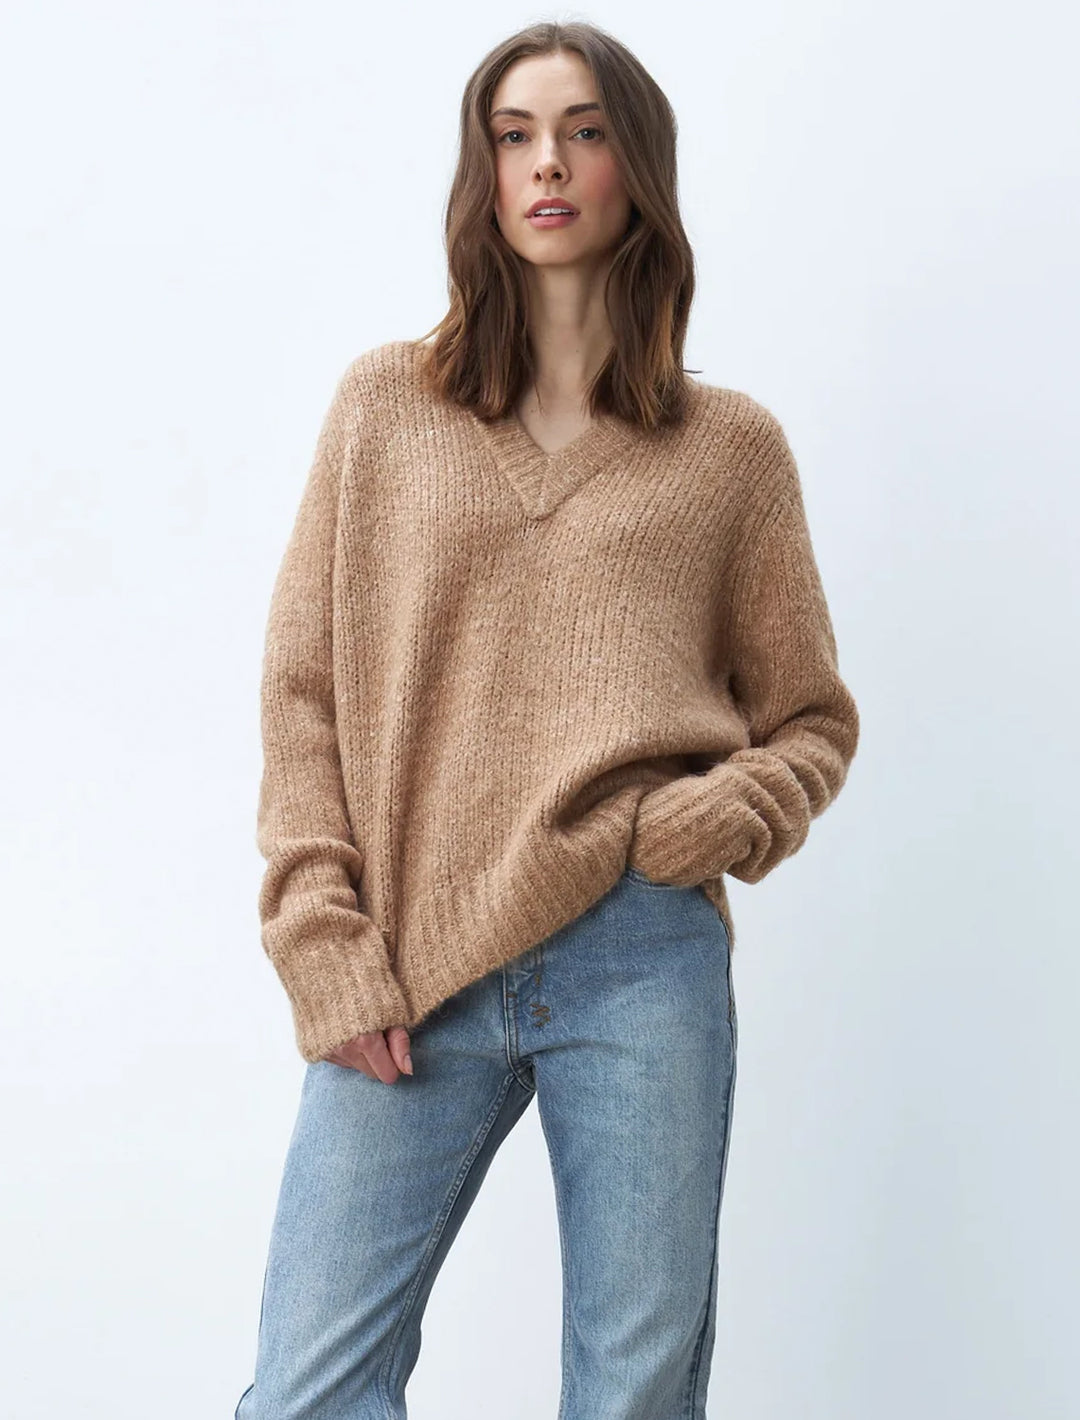 Model wearing Line's Helena Sweater in Toffee.